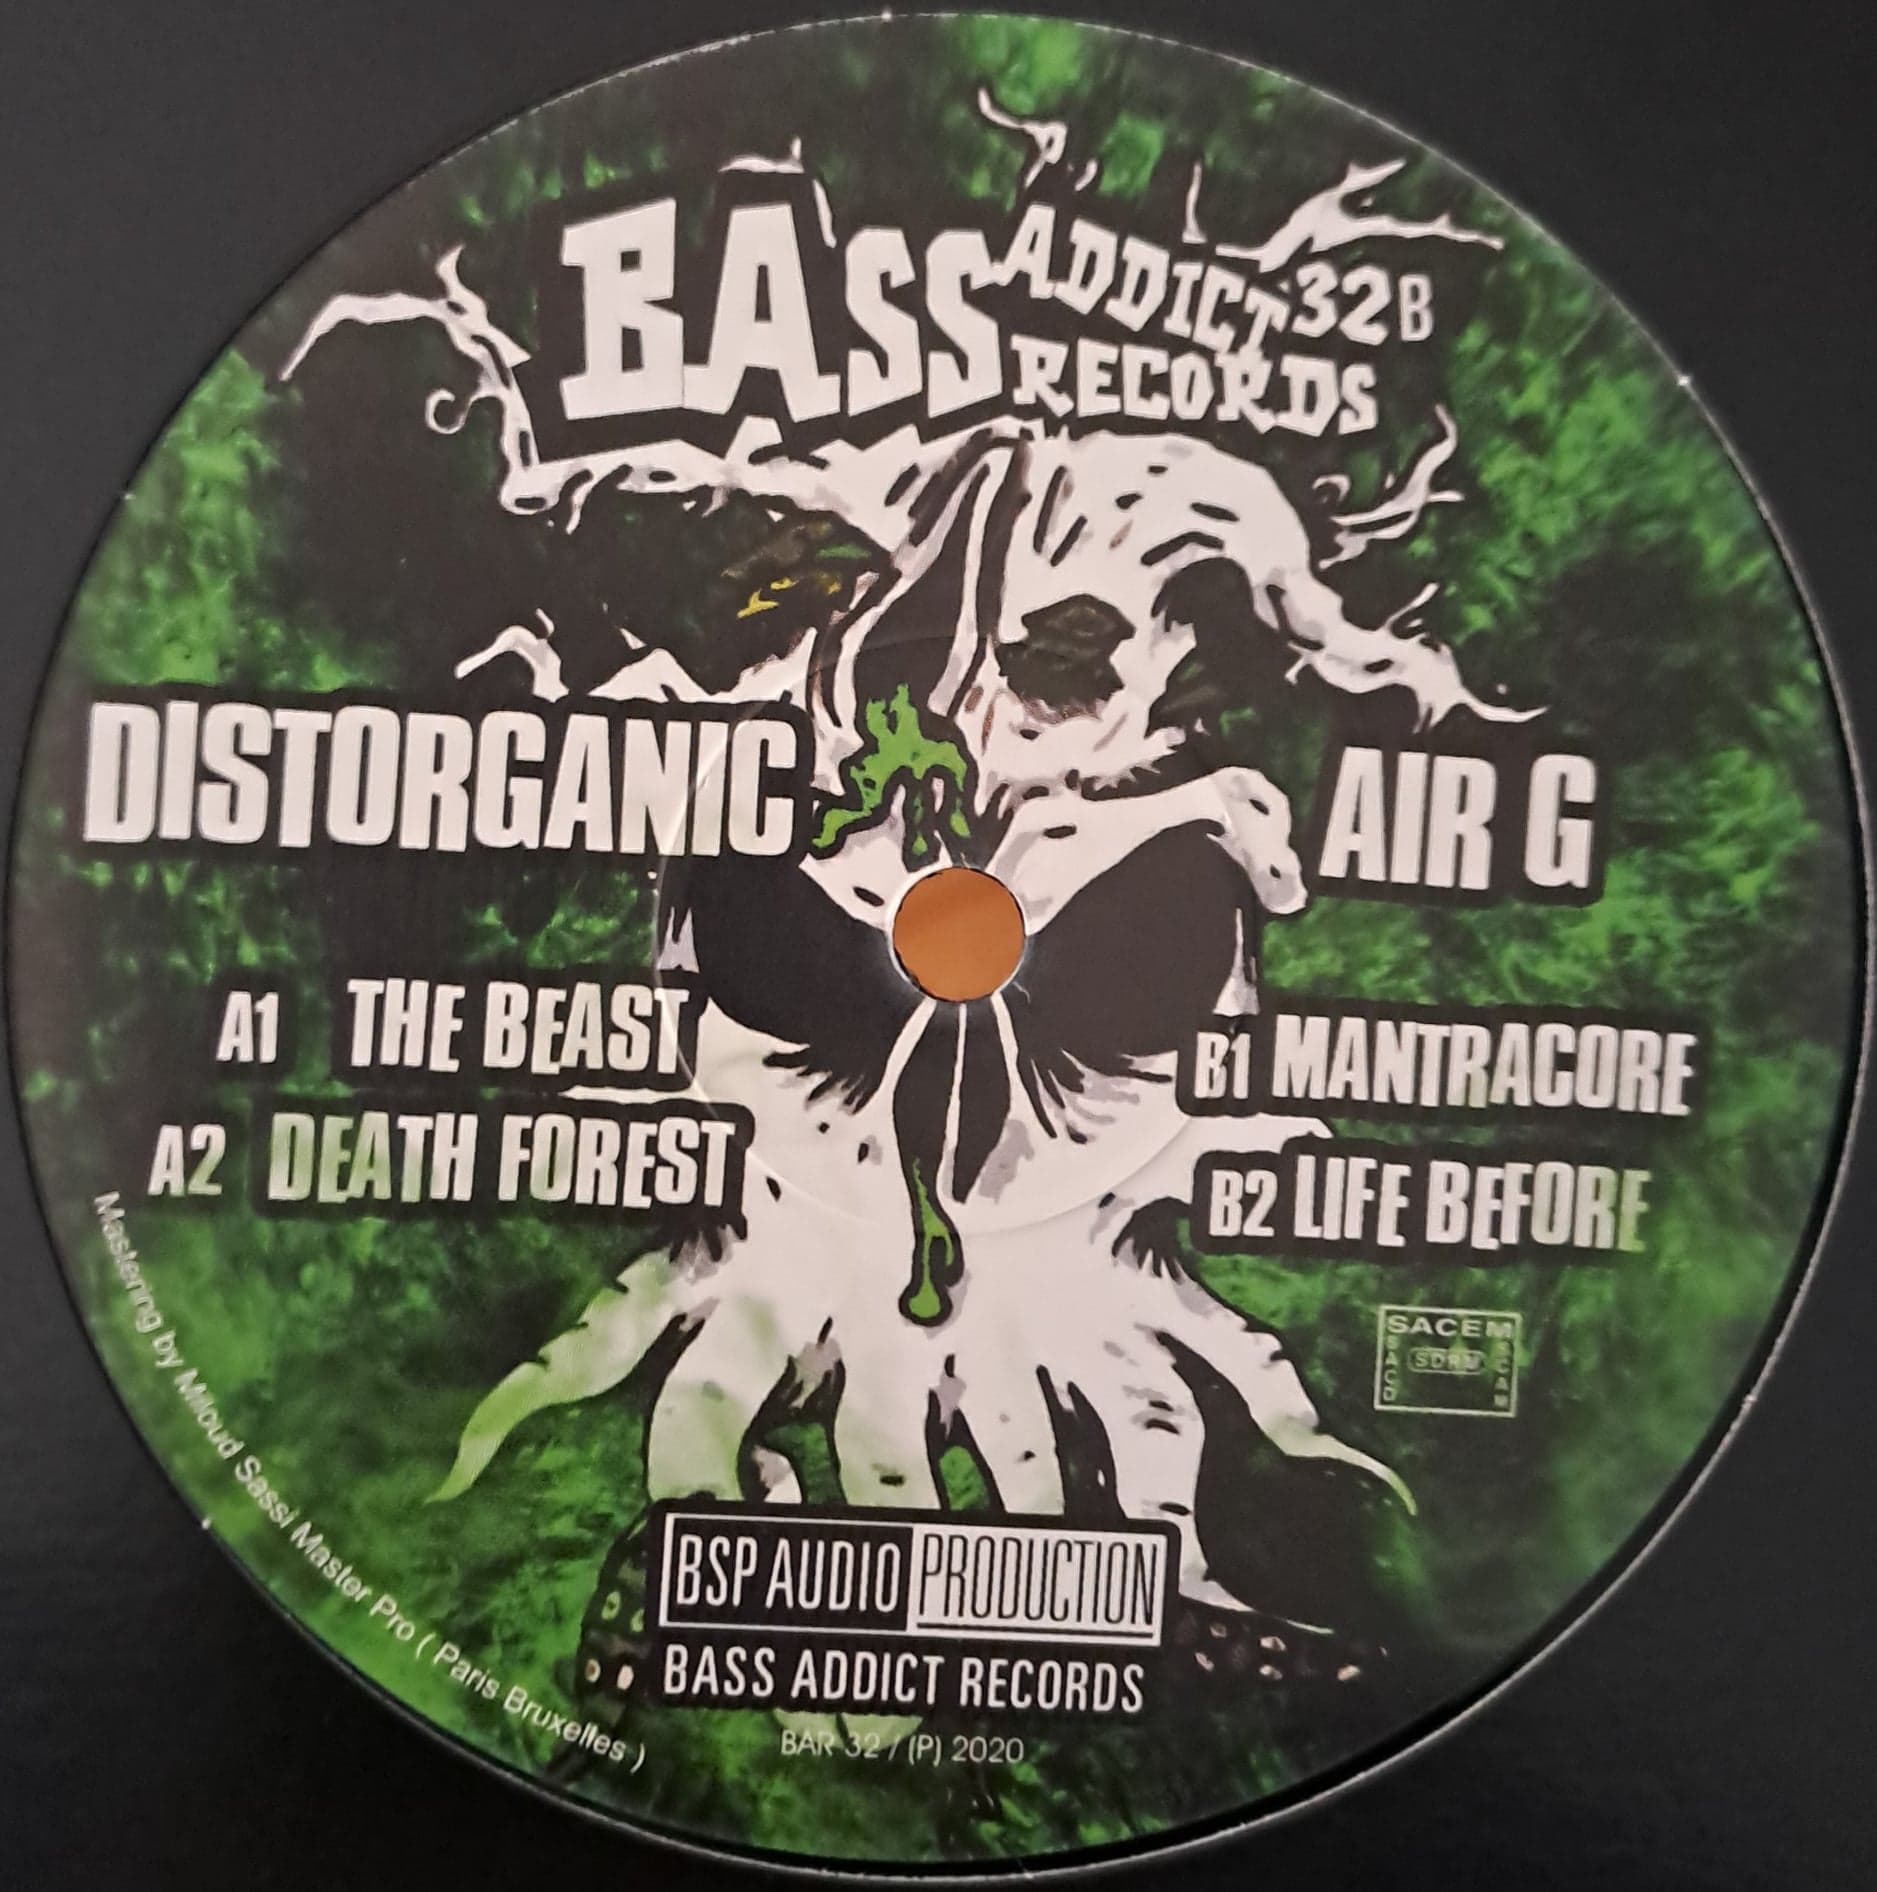 Bass Addict 32 (toute dernière copie en stock) - vinyle acidcore